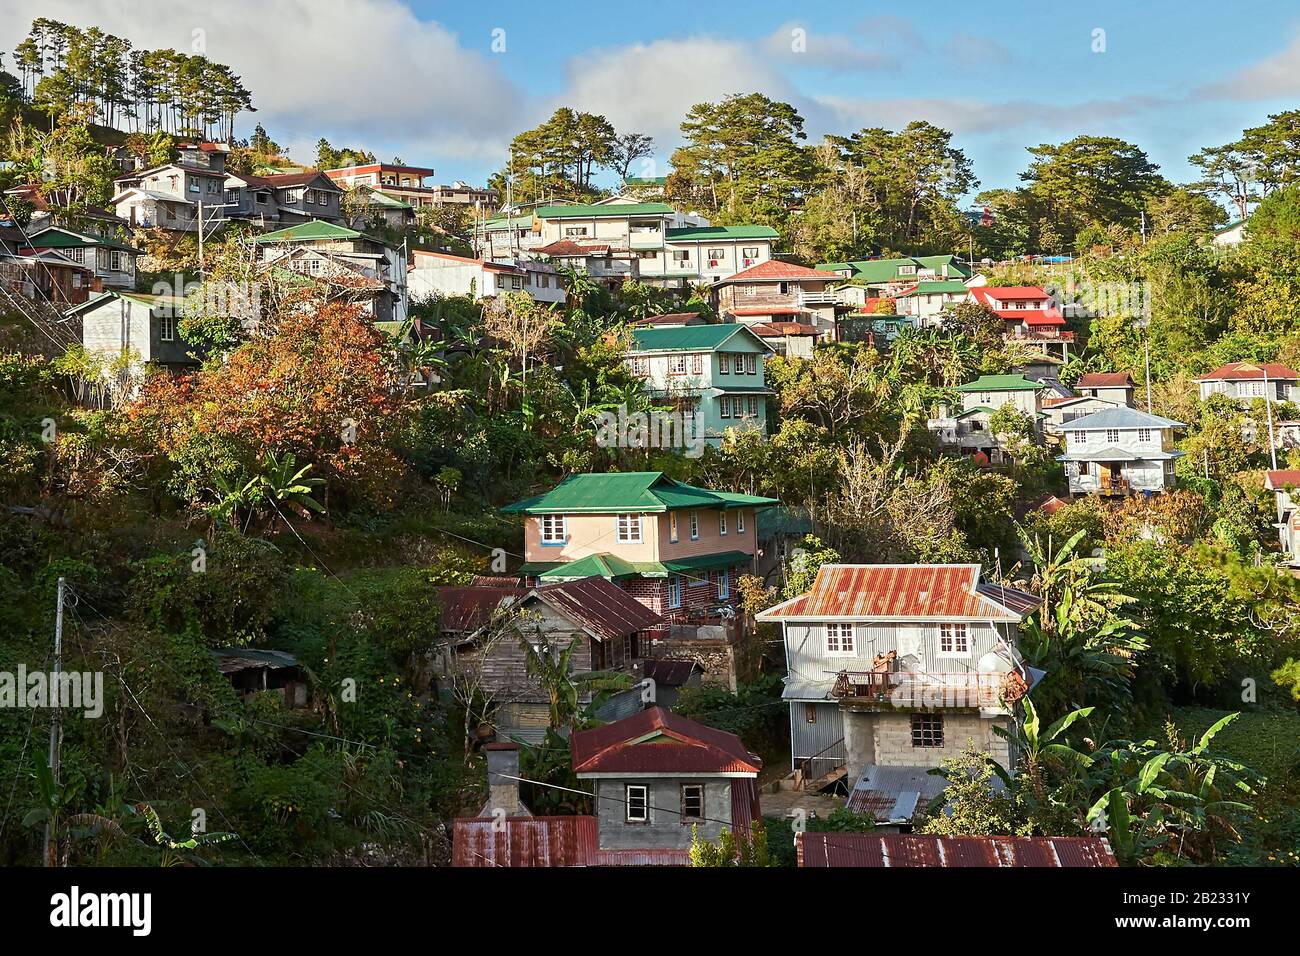 Malerische Aussicht auf traditionell erbaute Häuser mit rostigen Metalldächern und Metallblechen zum Schutz der Wände, die im Stadtzentrum von Sagada, Philippinen, zu sehen sind Stockfoto